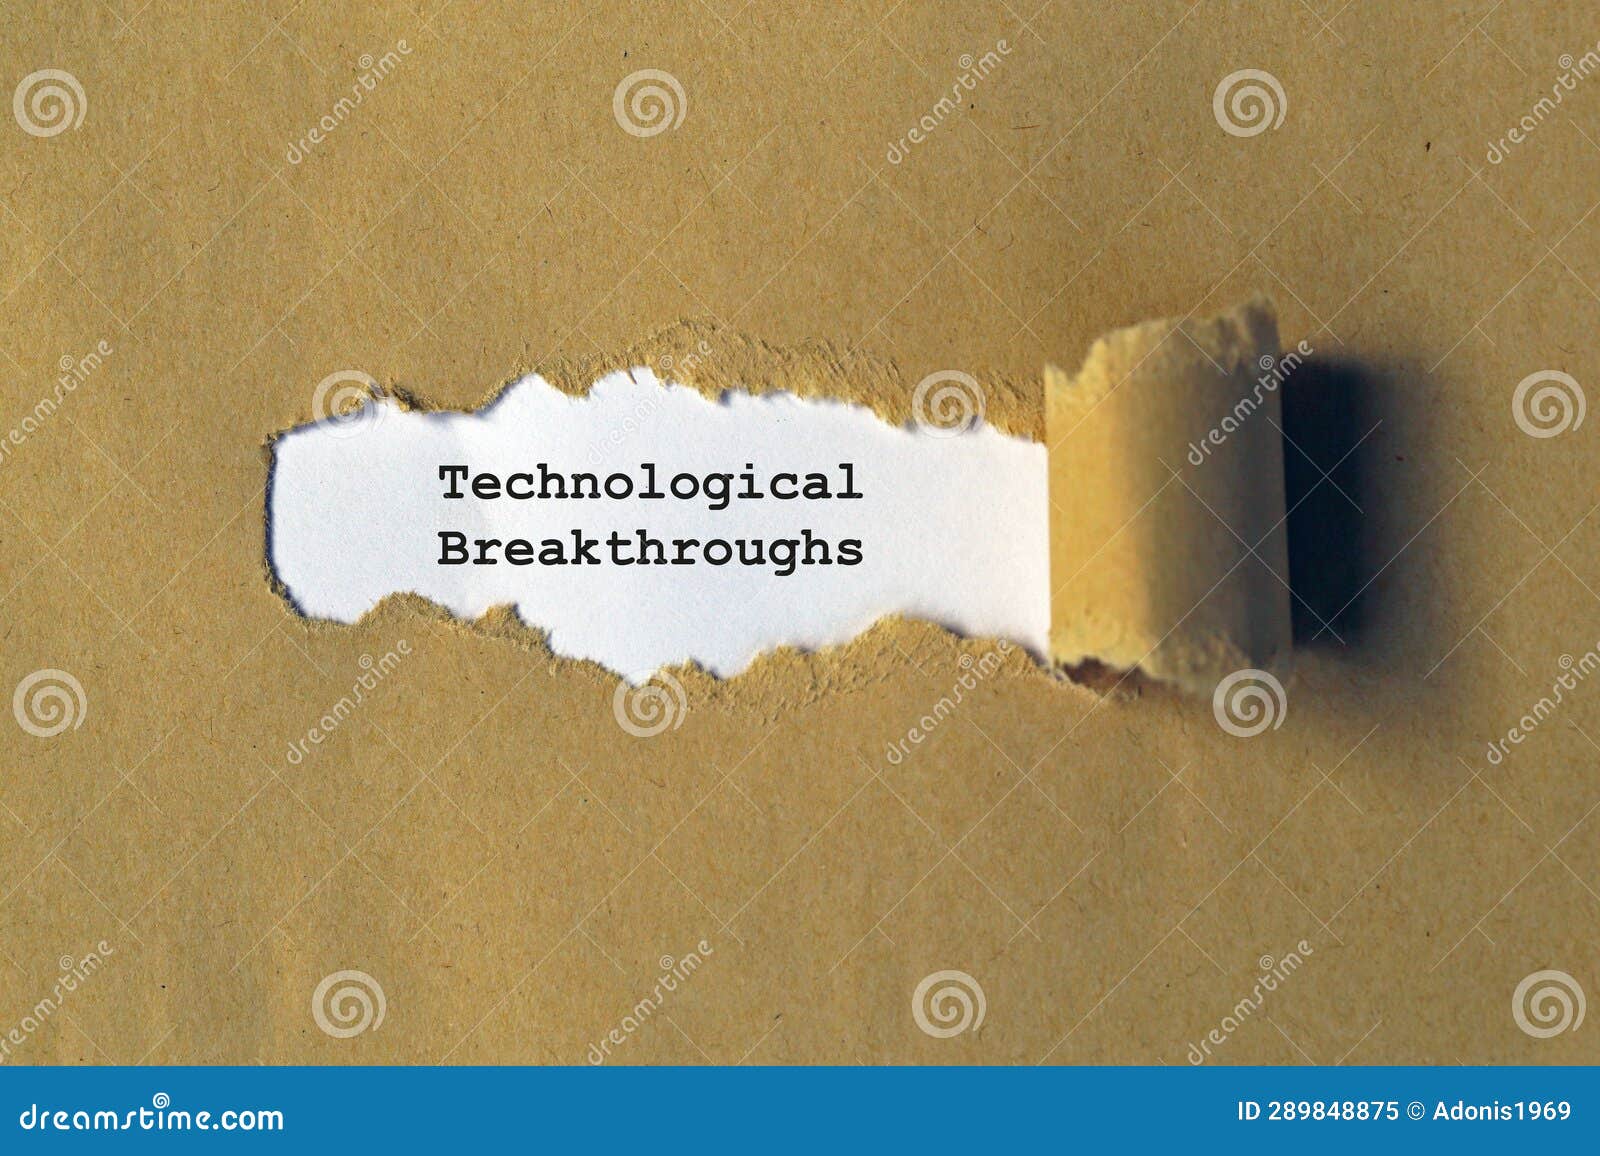 technological breakthroughs on white paper